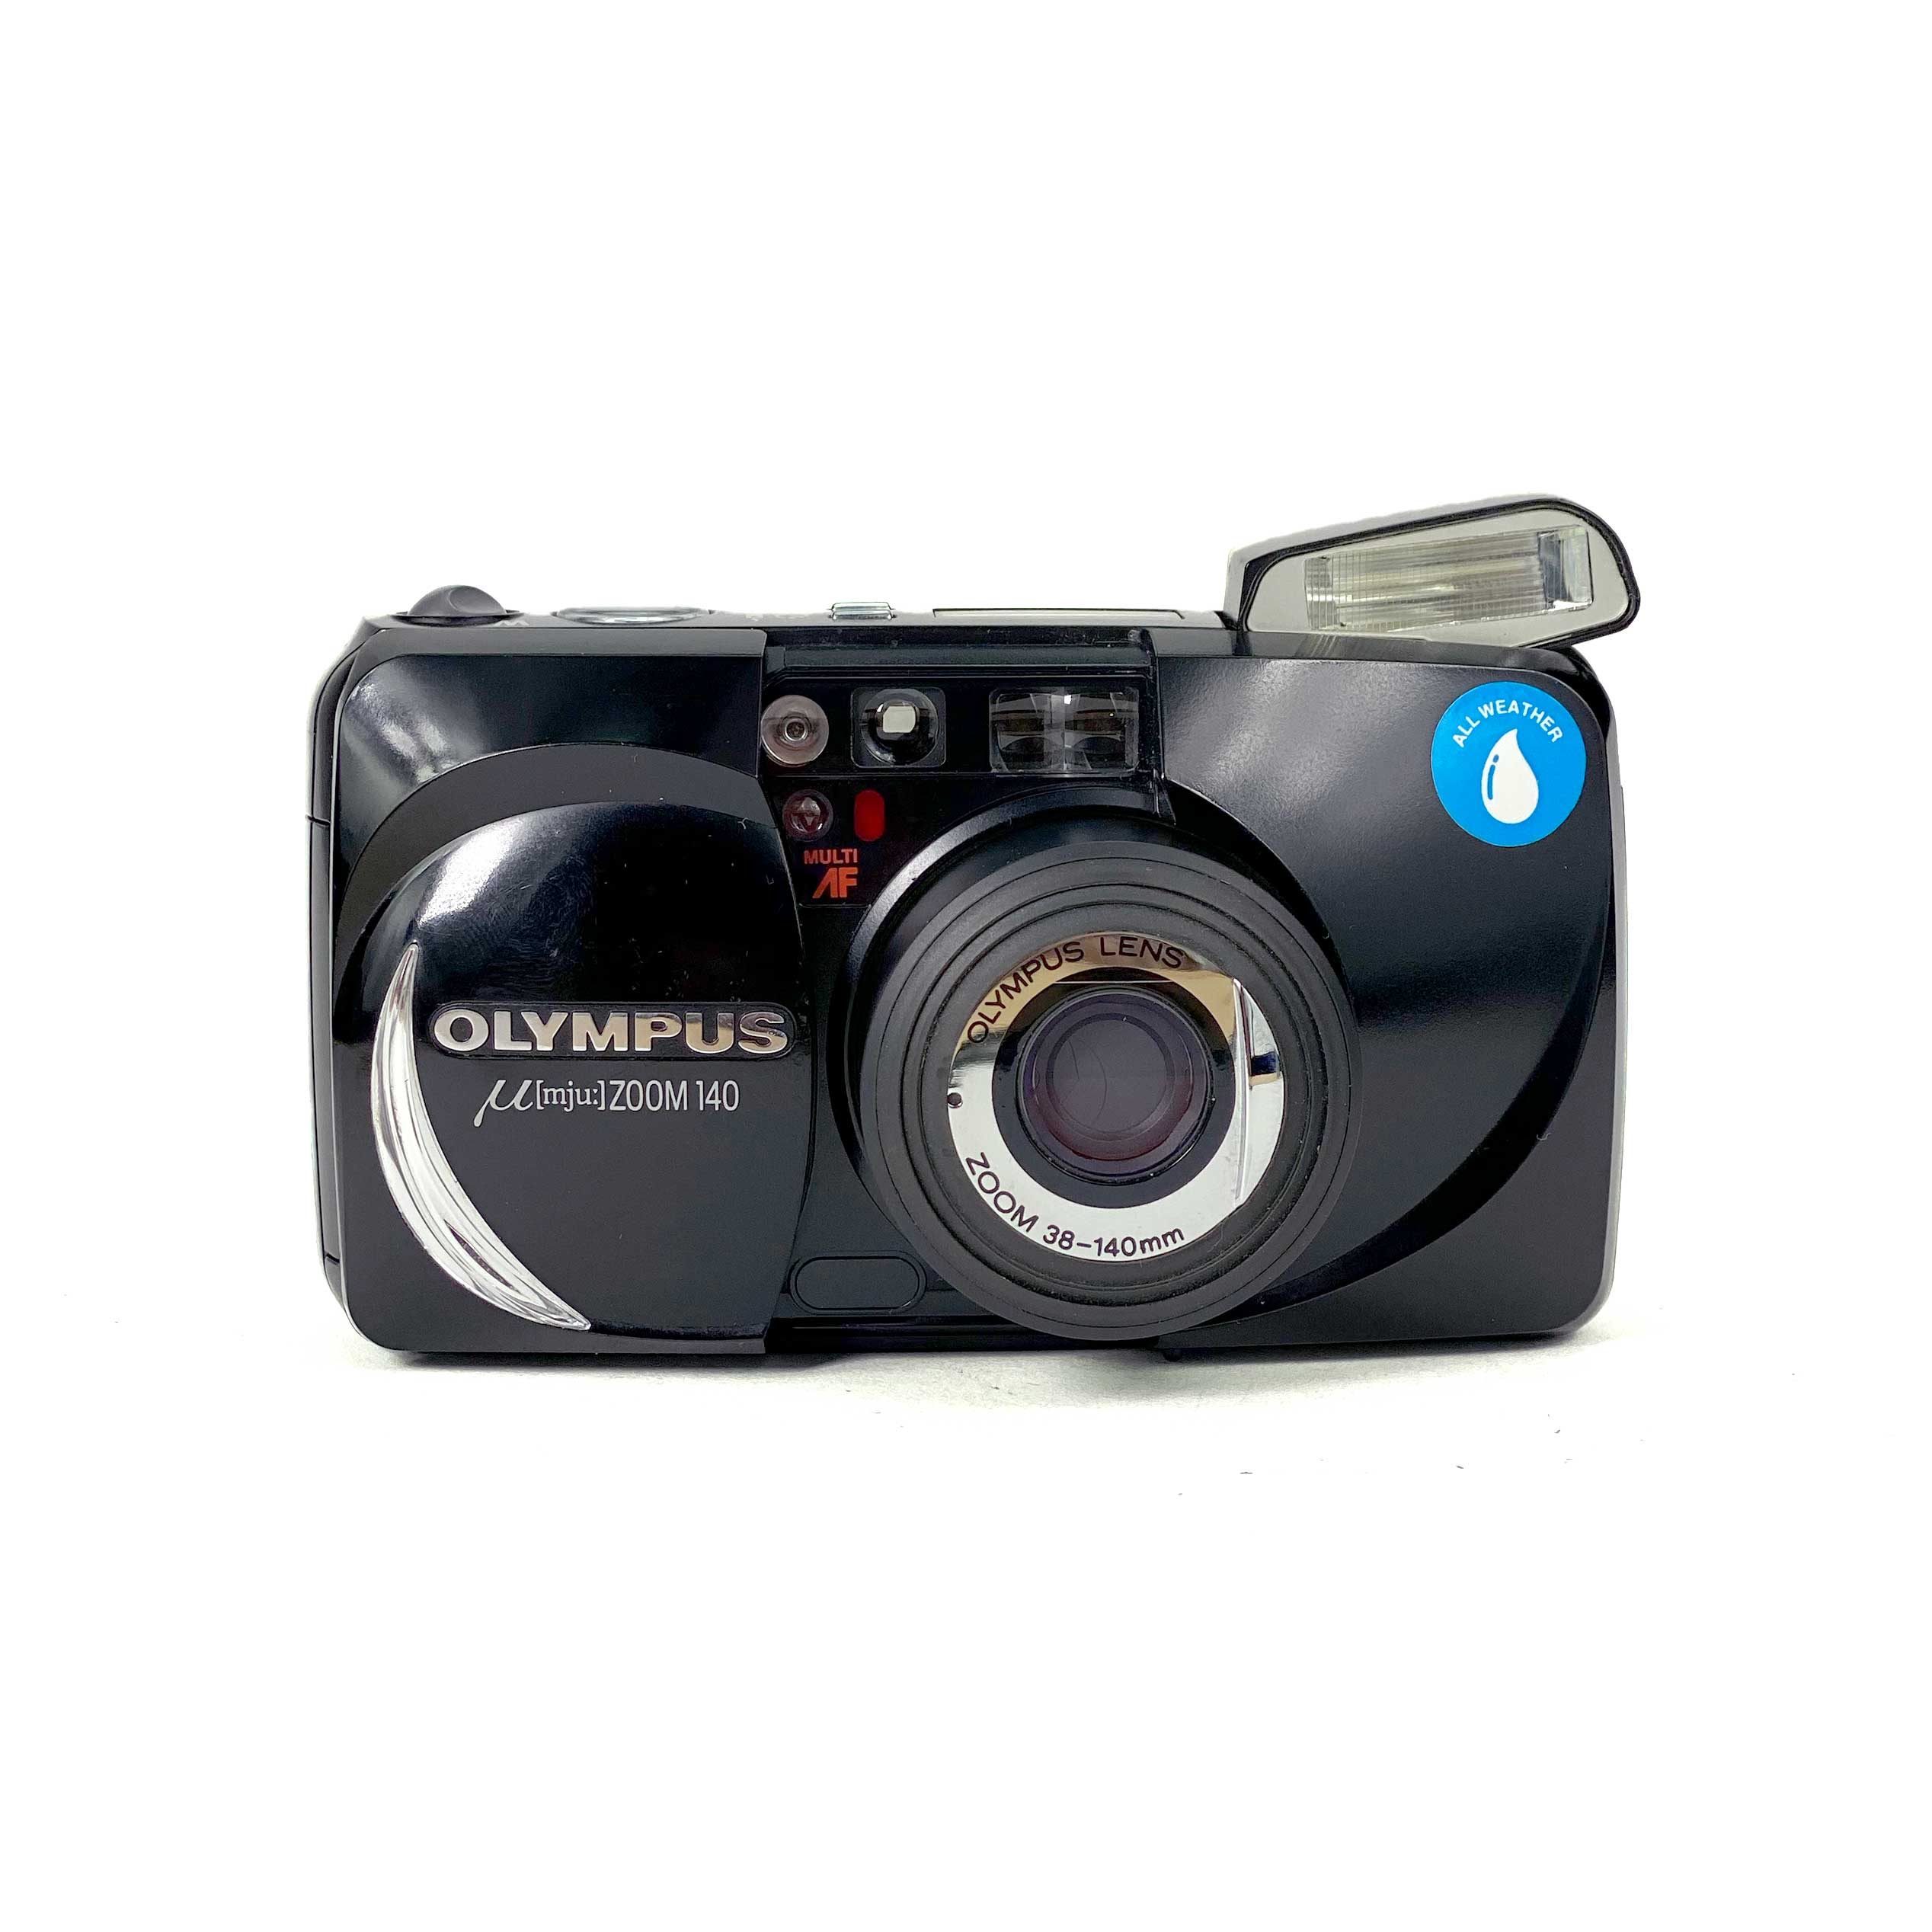 OLYMPUS ミュー ZOOM140 DX - フィルムカメラ